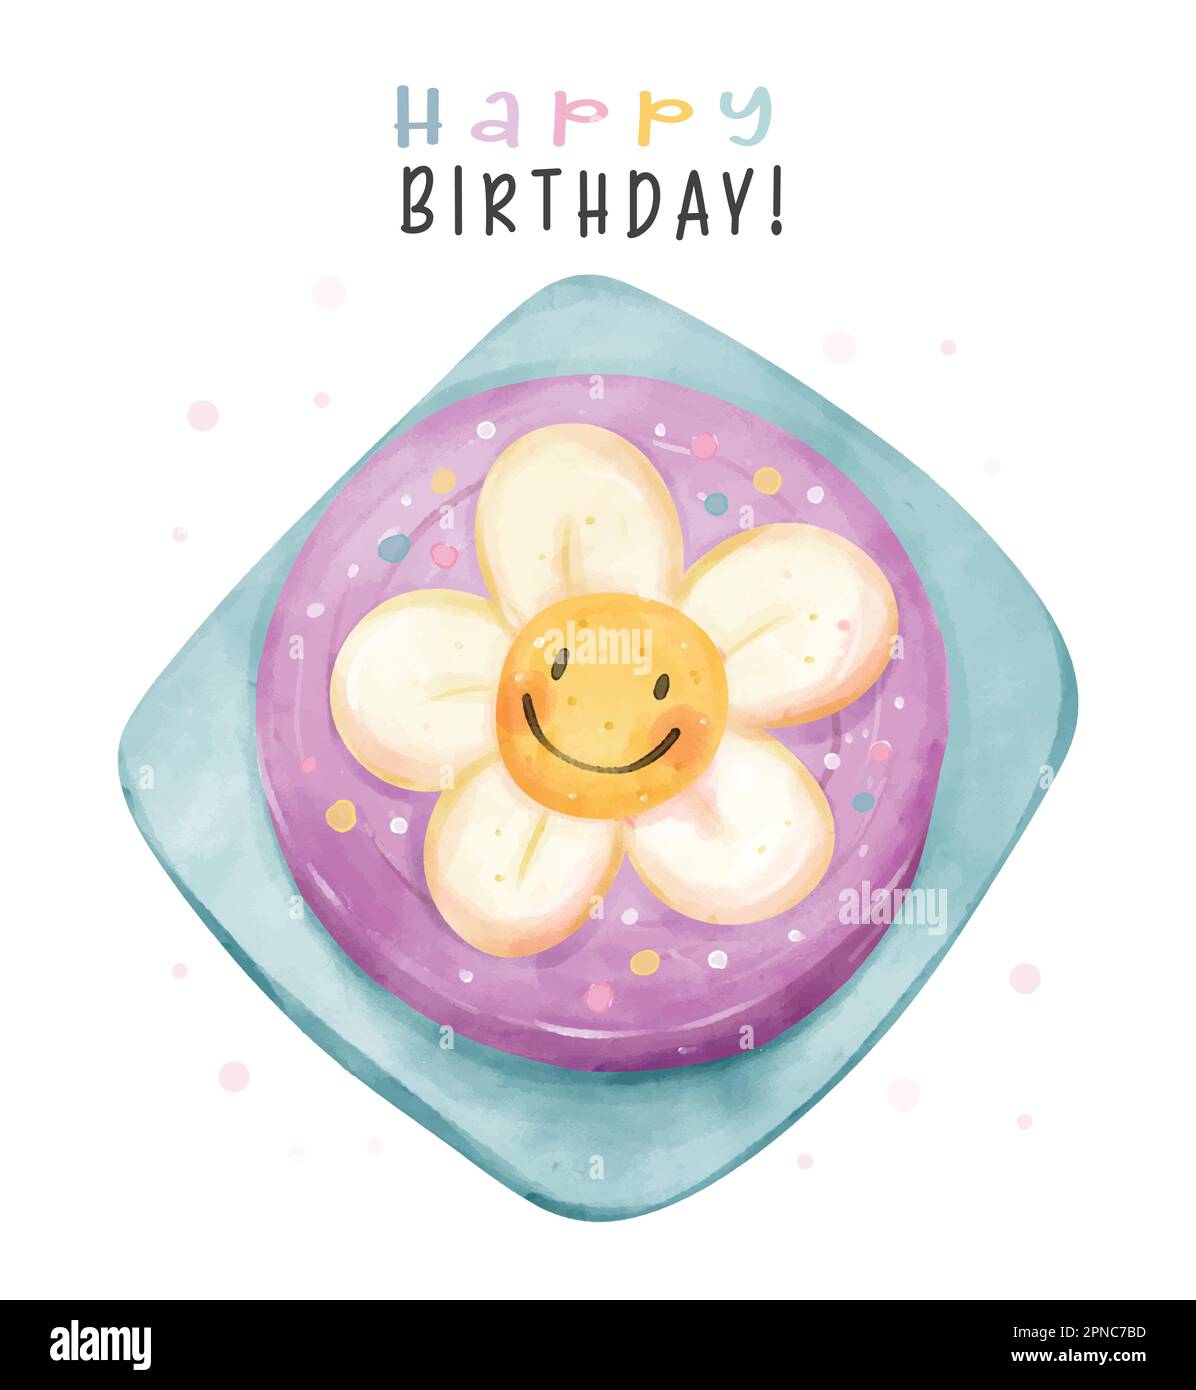 Süße bunte Pastell-Geburtstagstorte mit großer lächelnder Gänseblümchenblume oben, Happy Birthday Aquarell Handzeichnung für Grußkartenidee. Stock Vektor